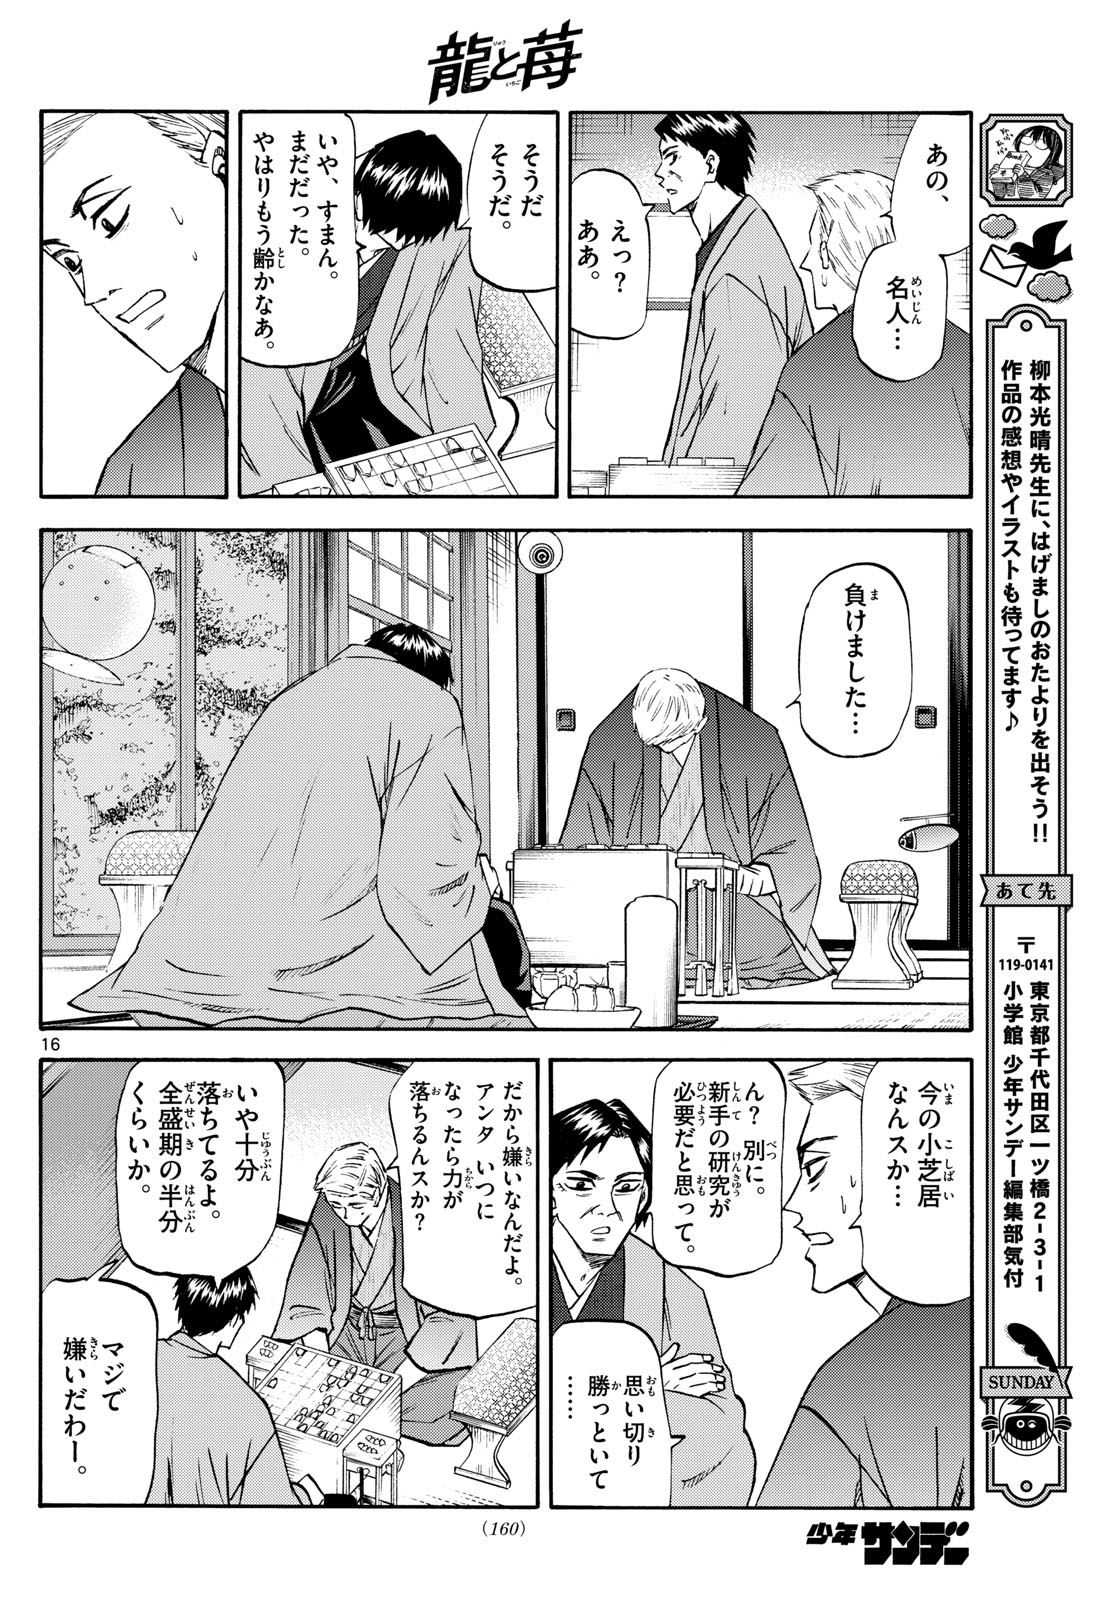 Tatsu to Ichigo - Chapter 195 - Page 16